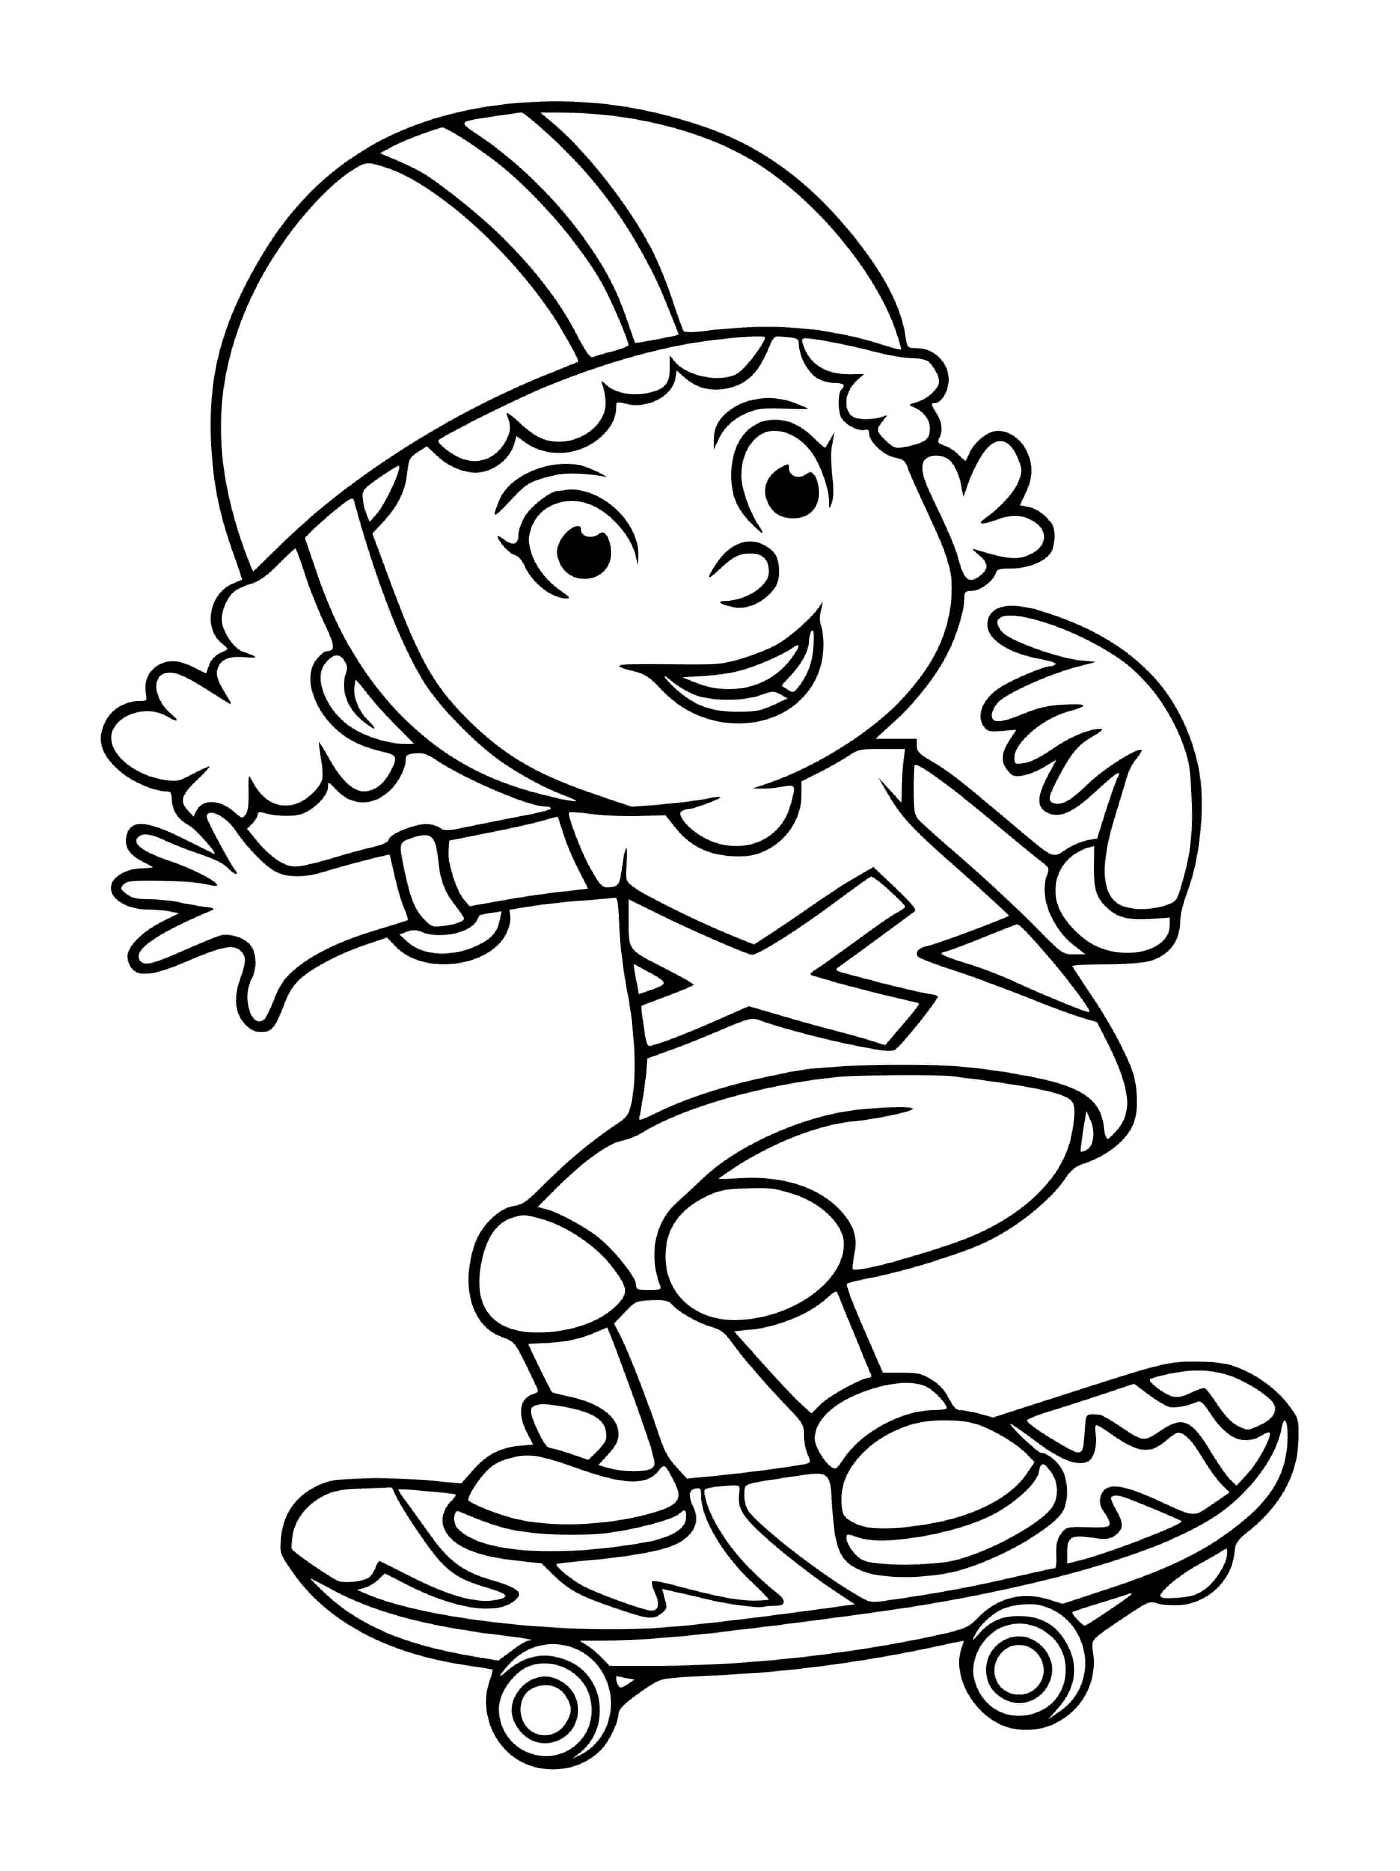  A girl on a skateboard 